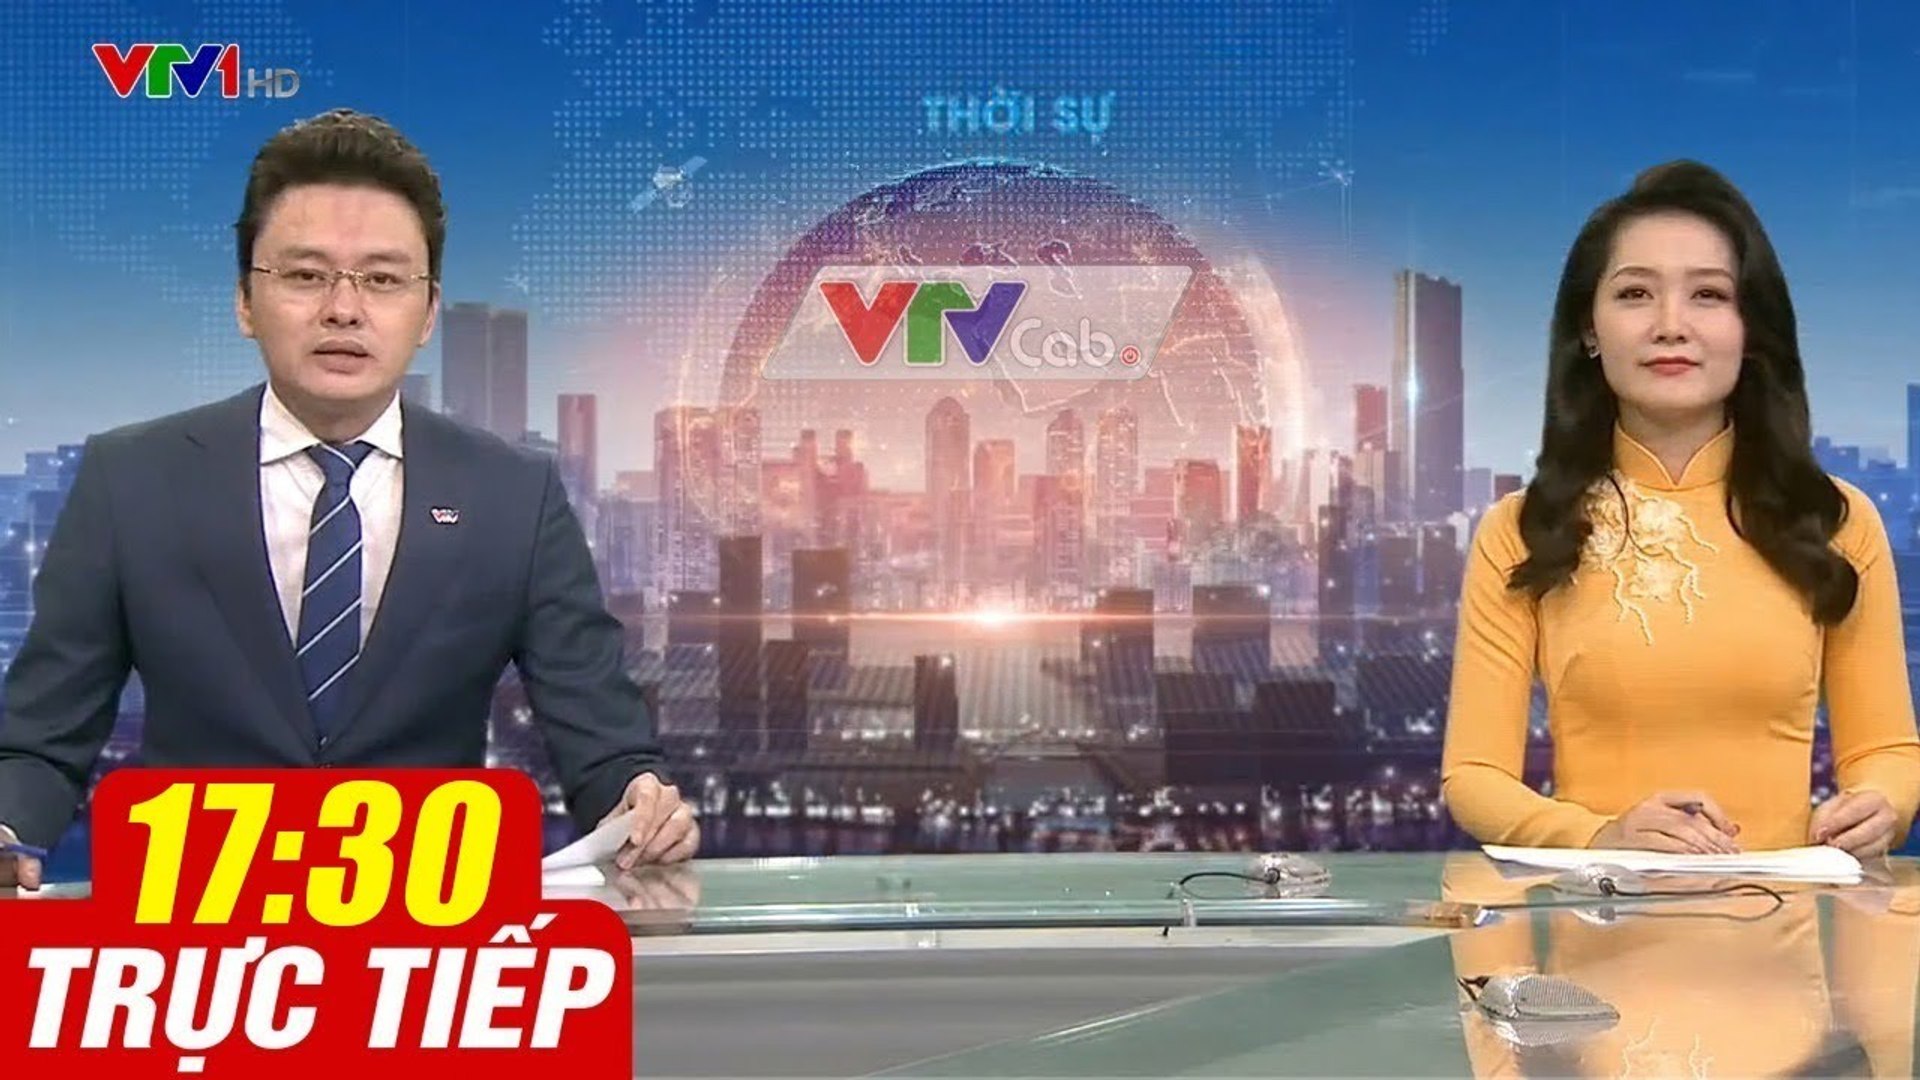 Trực Tiếp VIỆT NAM HÔM NAY 17h30 ngày 19.10.2020  Tin tức thời sự VTV1 mới nhất hôm nay